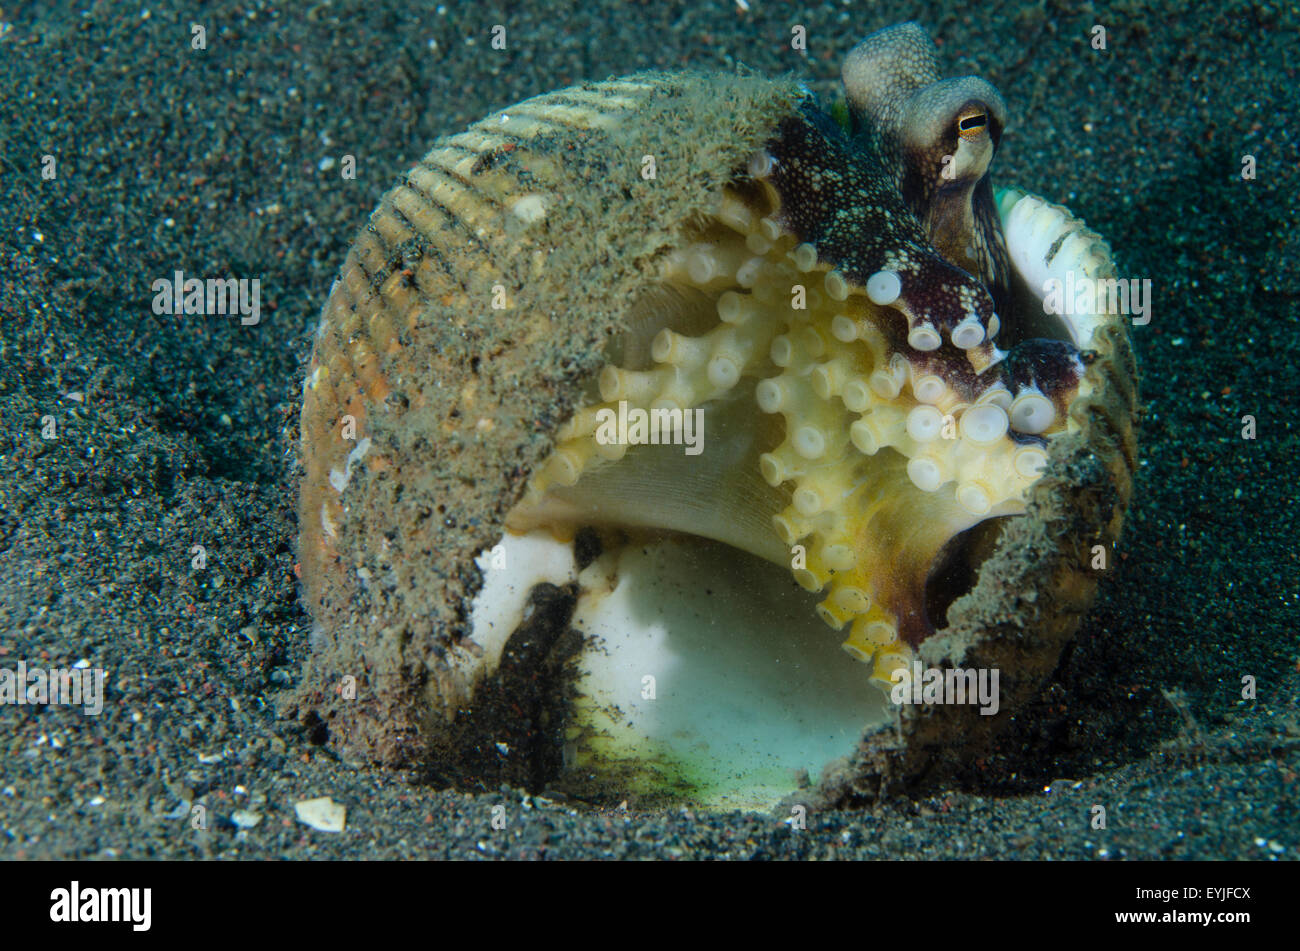 Kokosnuss Oktopus, Amphioctopus Marginatus, lebt in einer verlassenen Clam-Shell Puri Jati, Seririt, Nord Bali, Indonesien Stockfoto